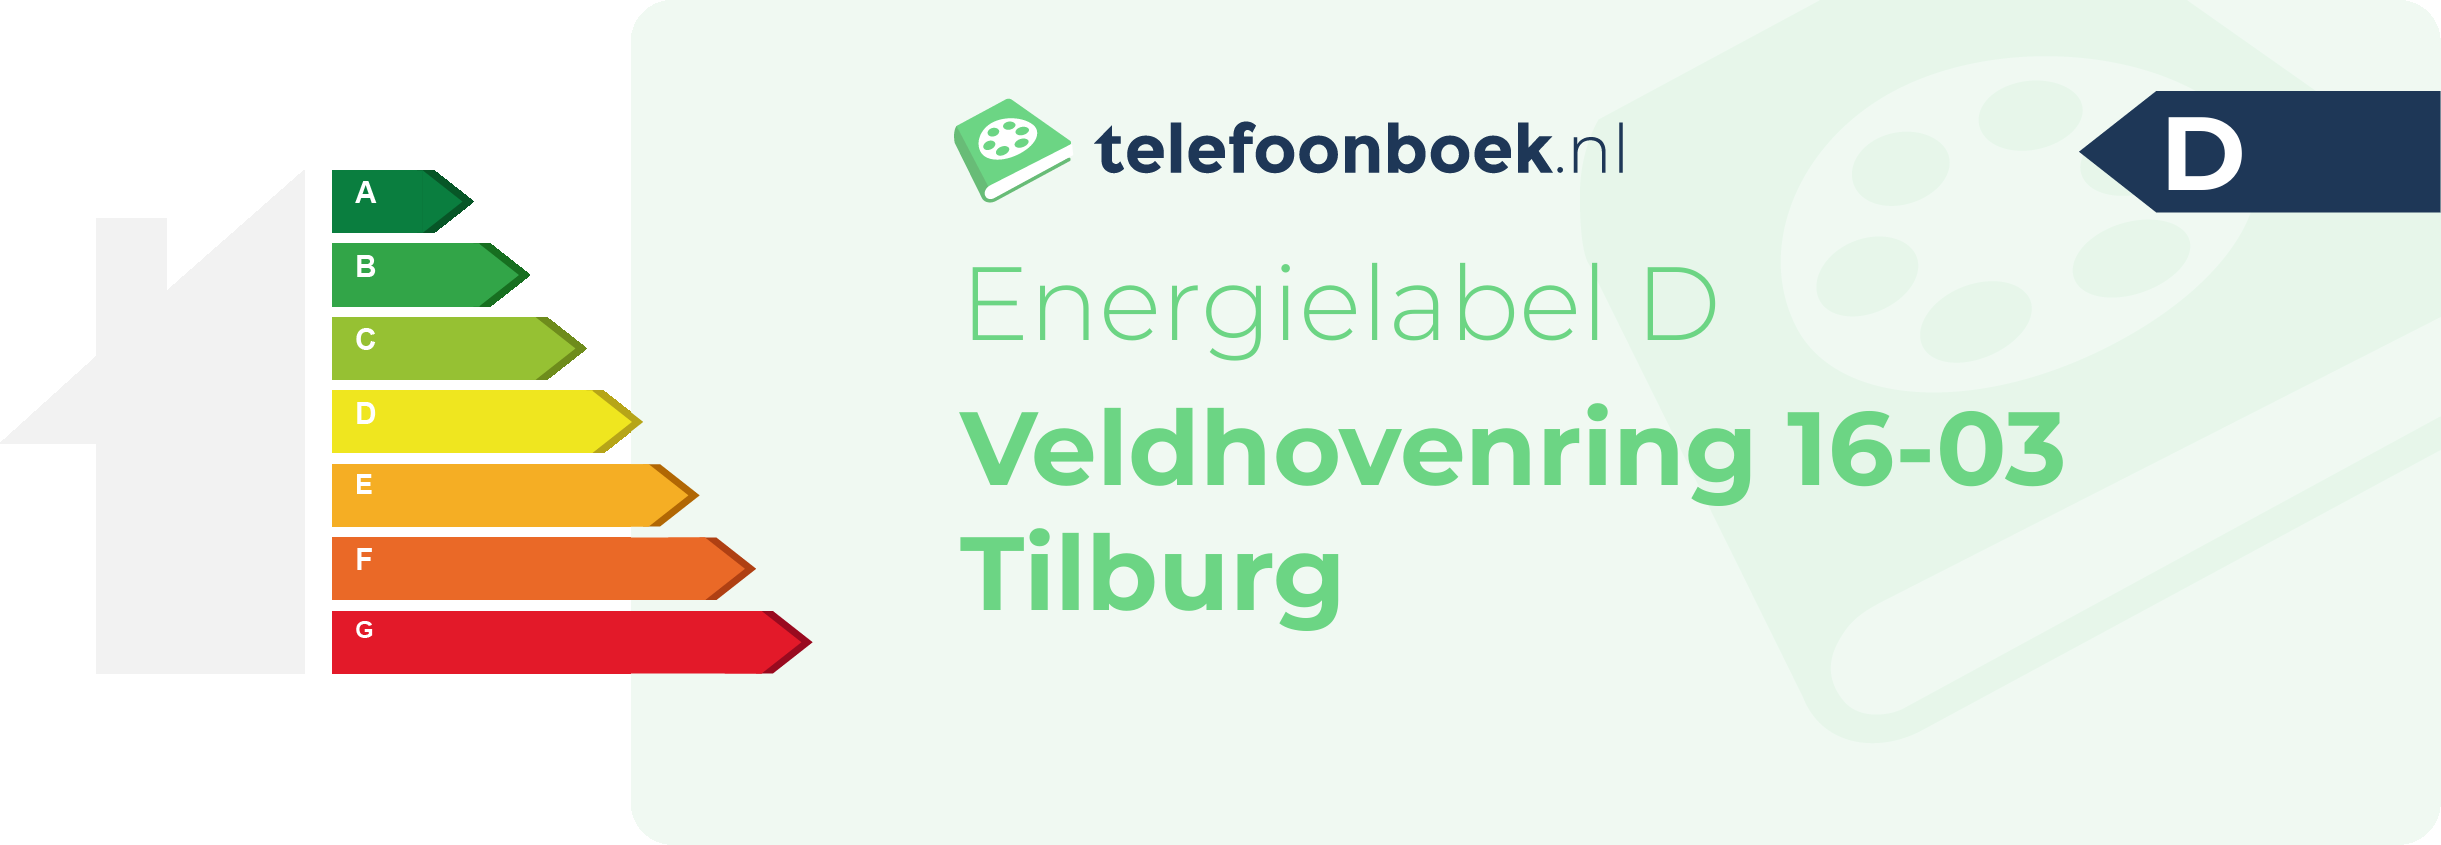 Energielabel Veldhovenring 16-03 Tilburg